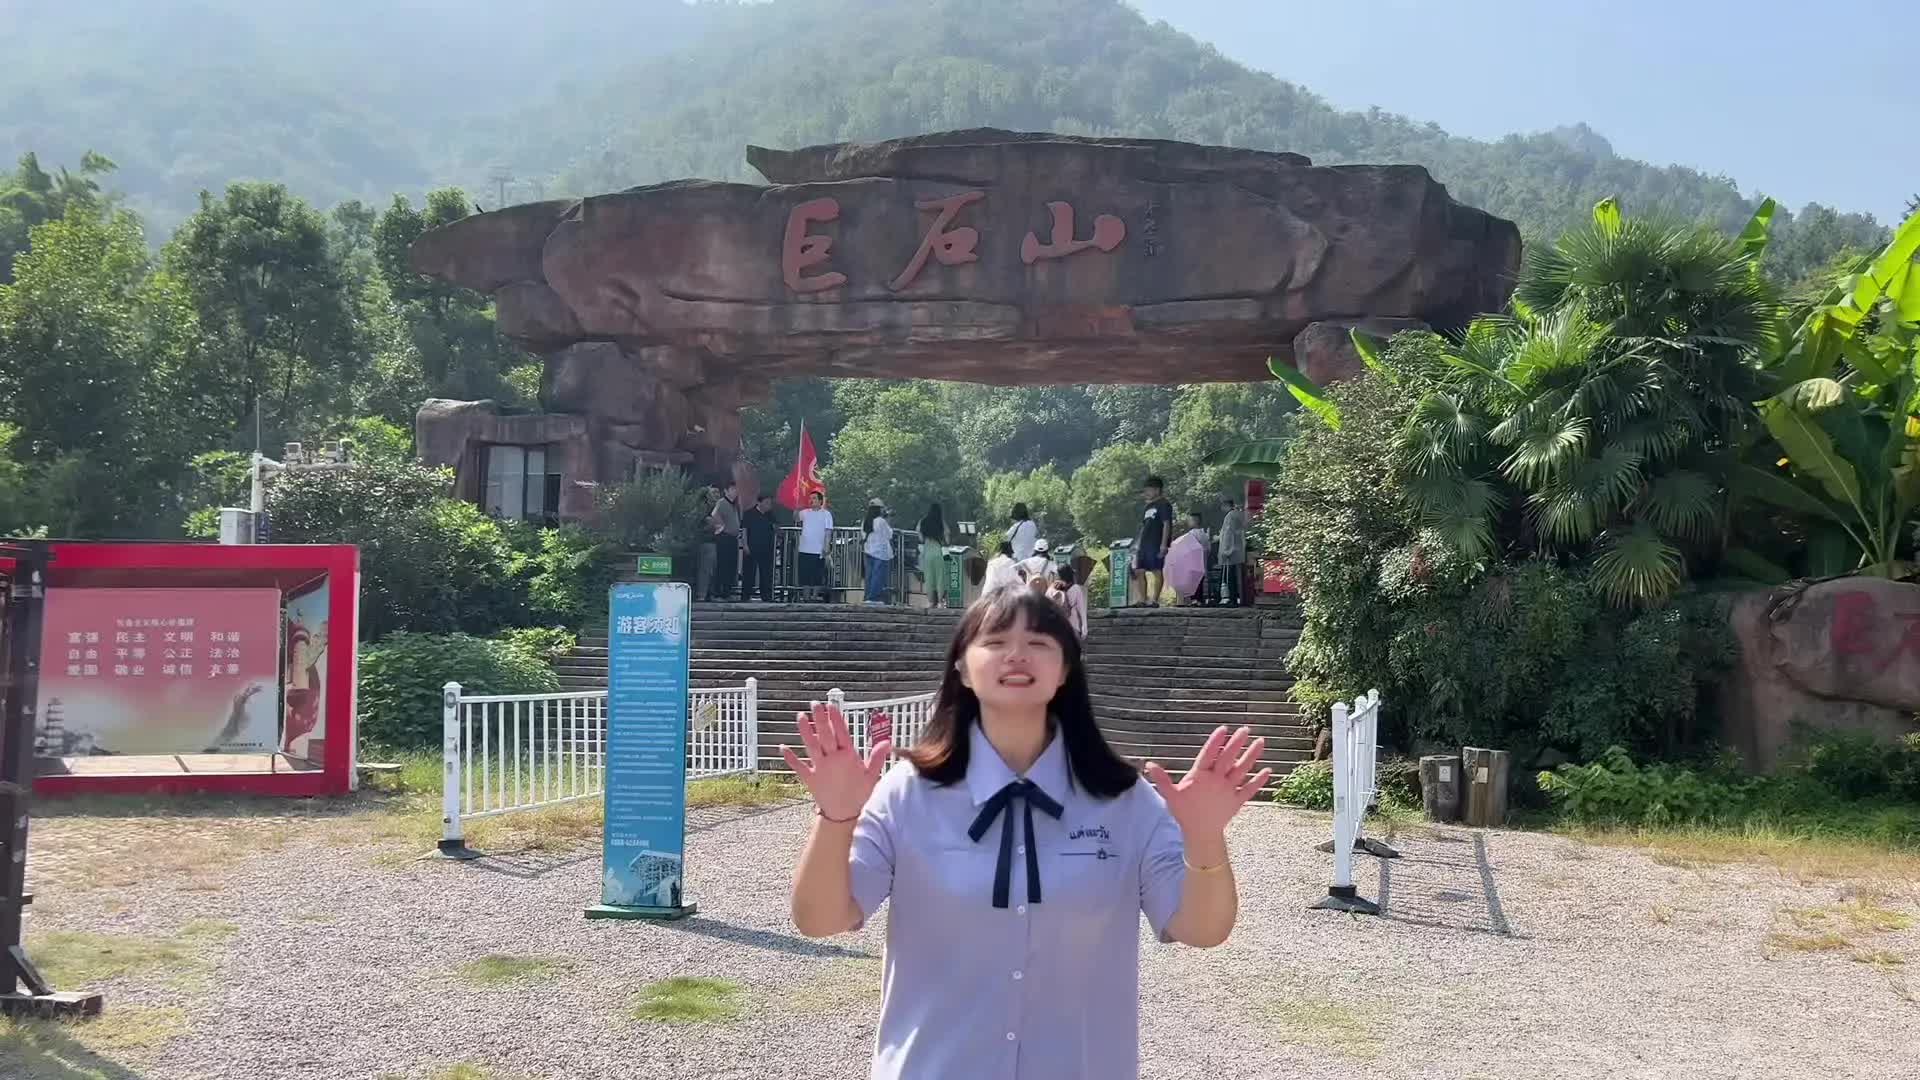 国庆假期没想到去哪儿玩就来安庆巨石山吧